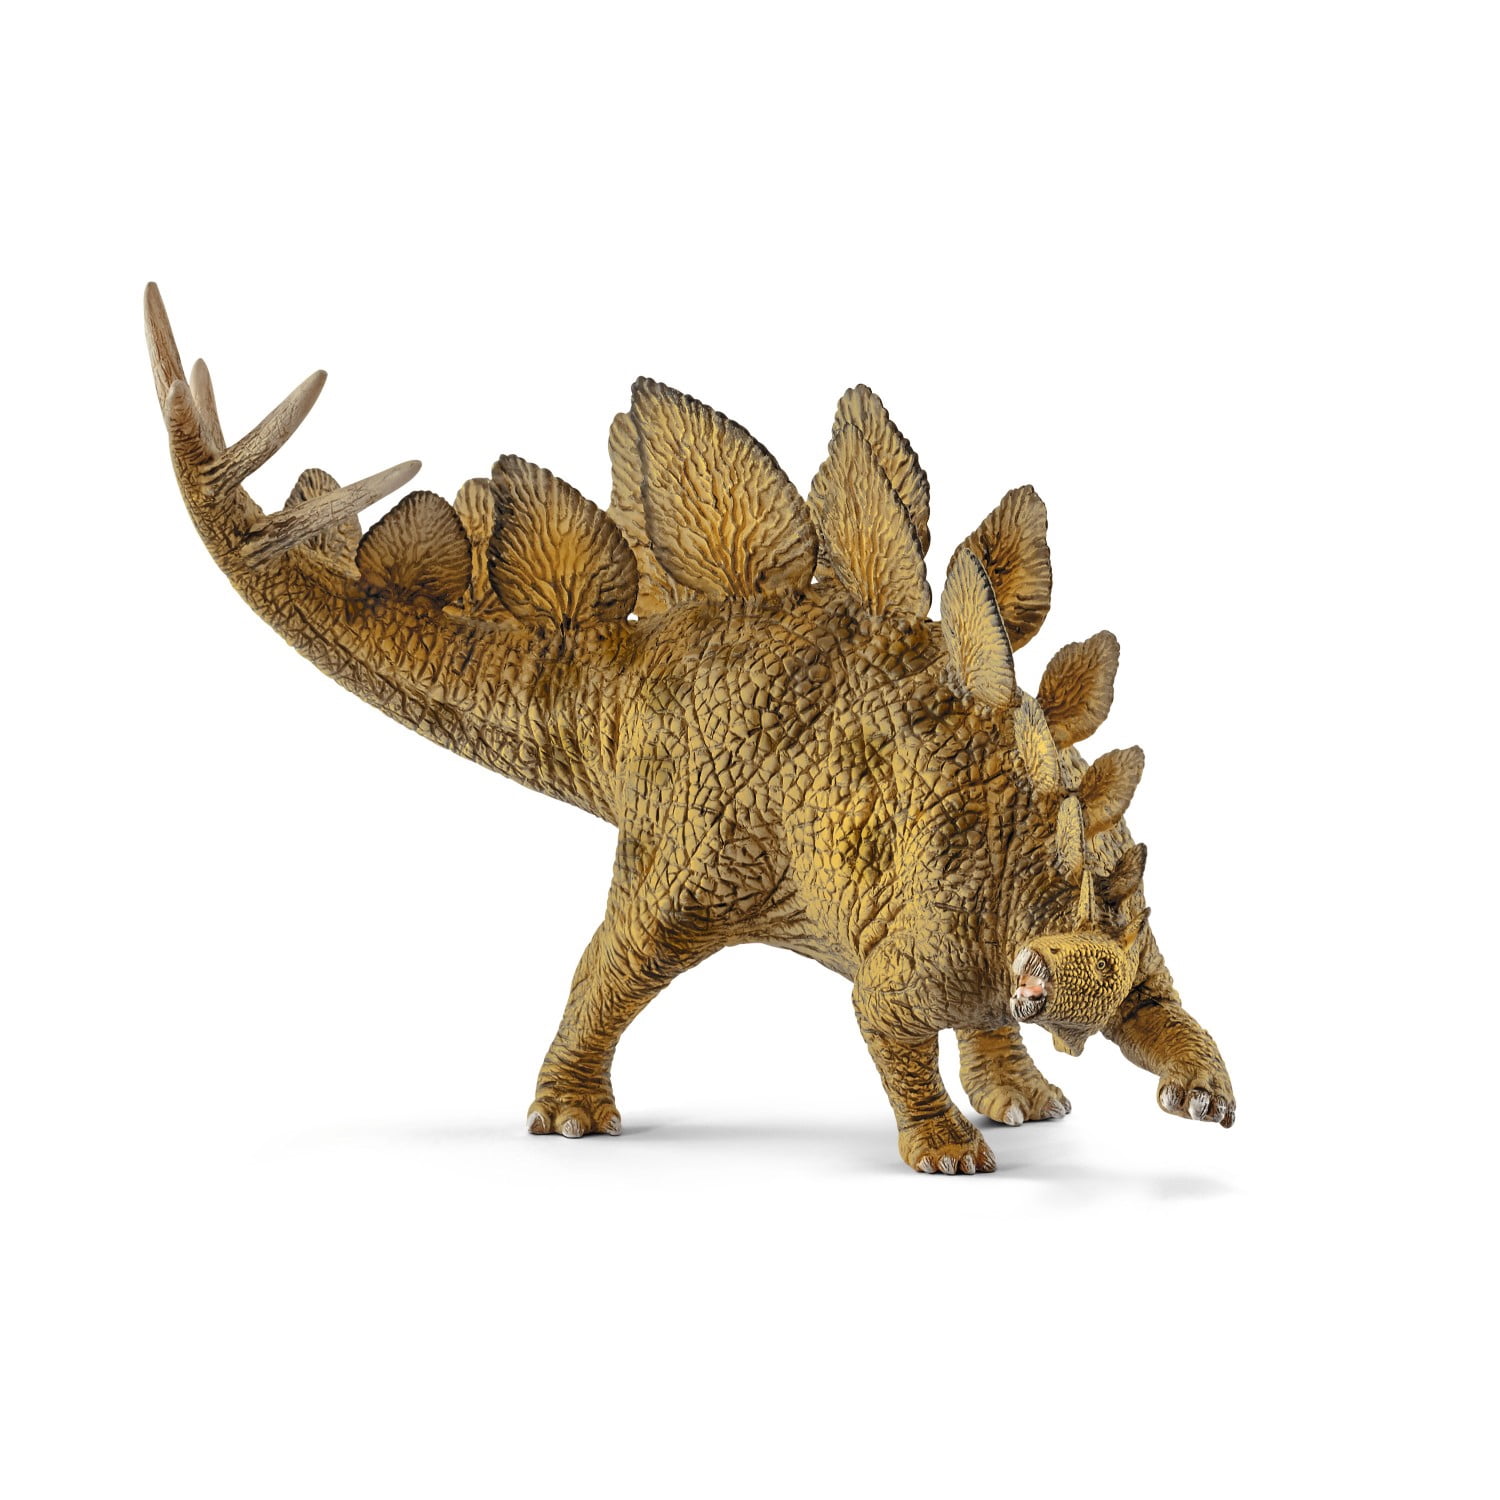 Schleich Dinosaurs Stegosaurus Figure NEW 